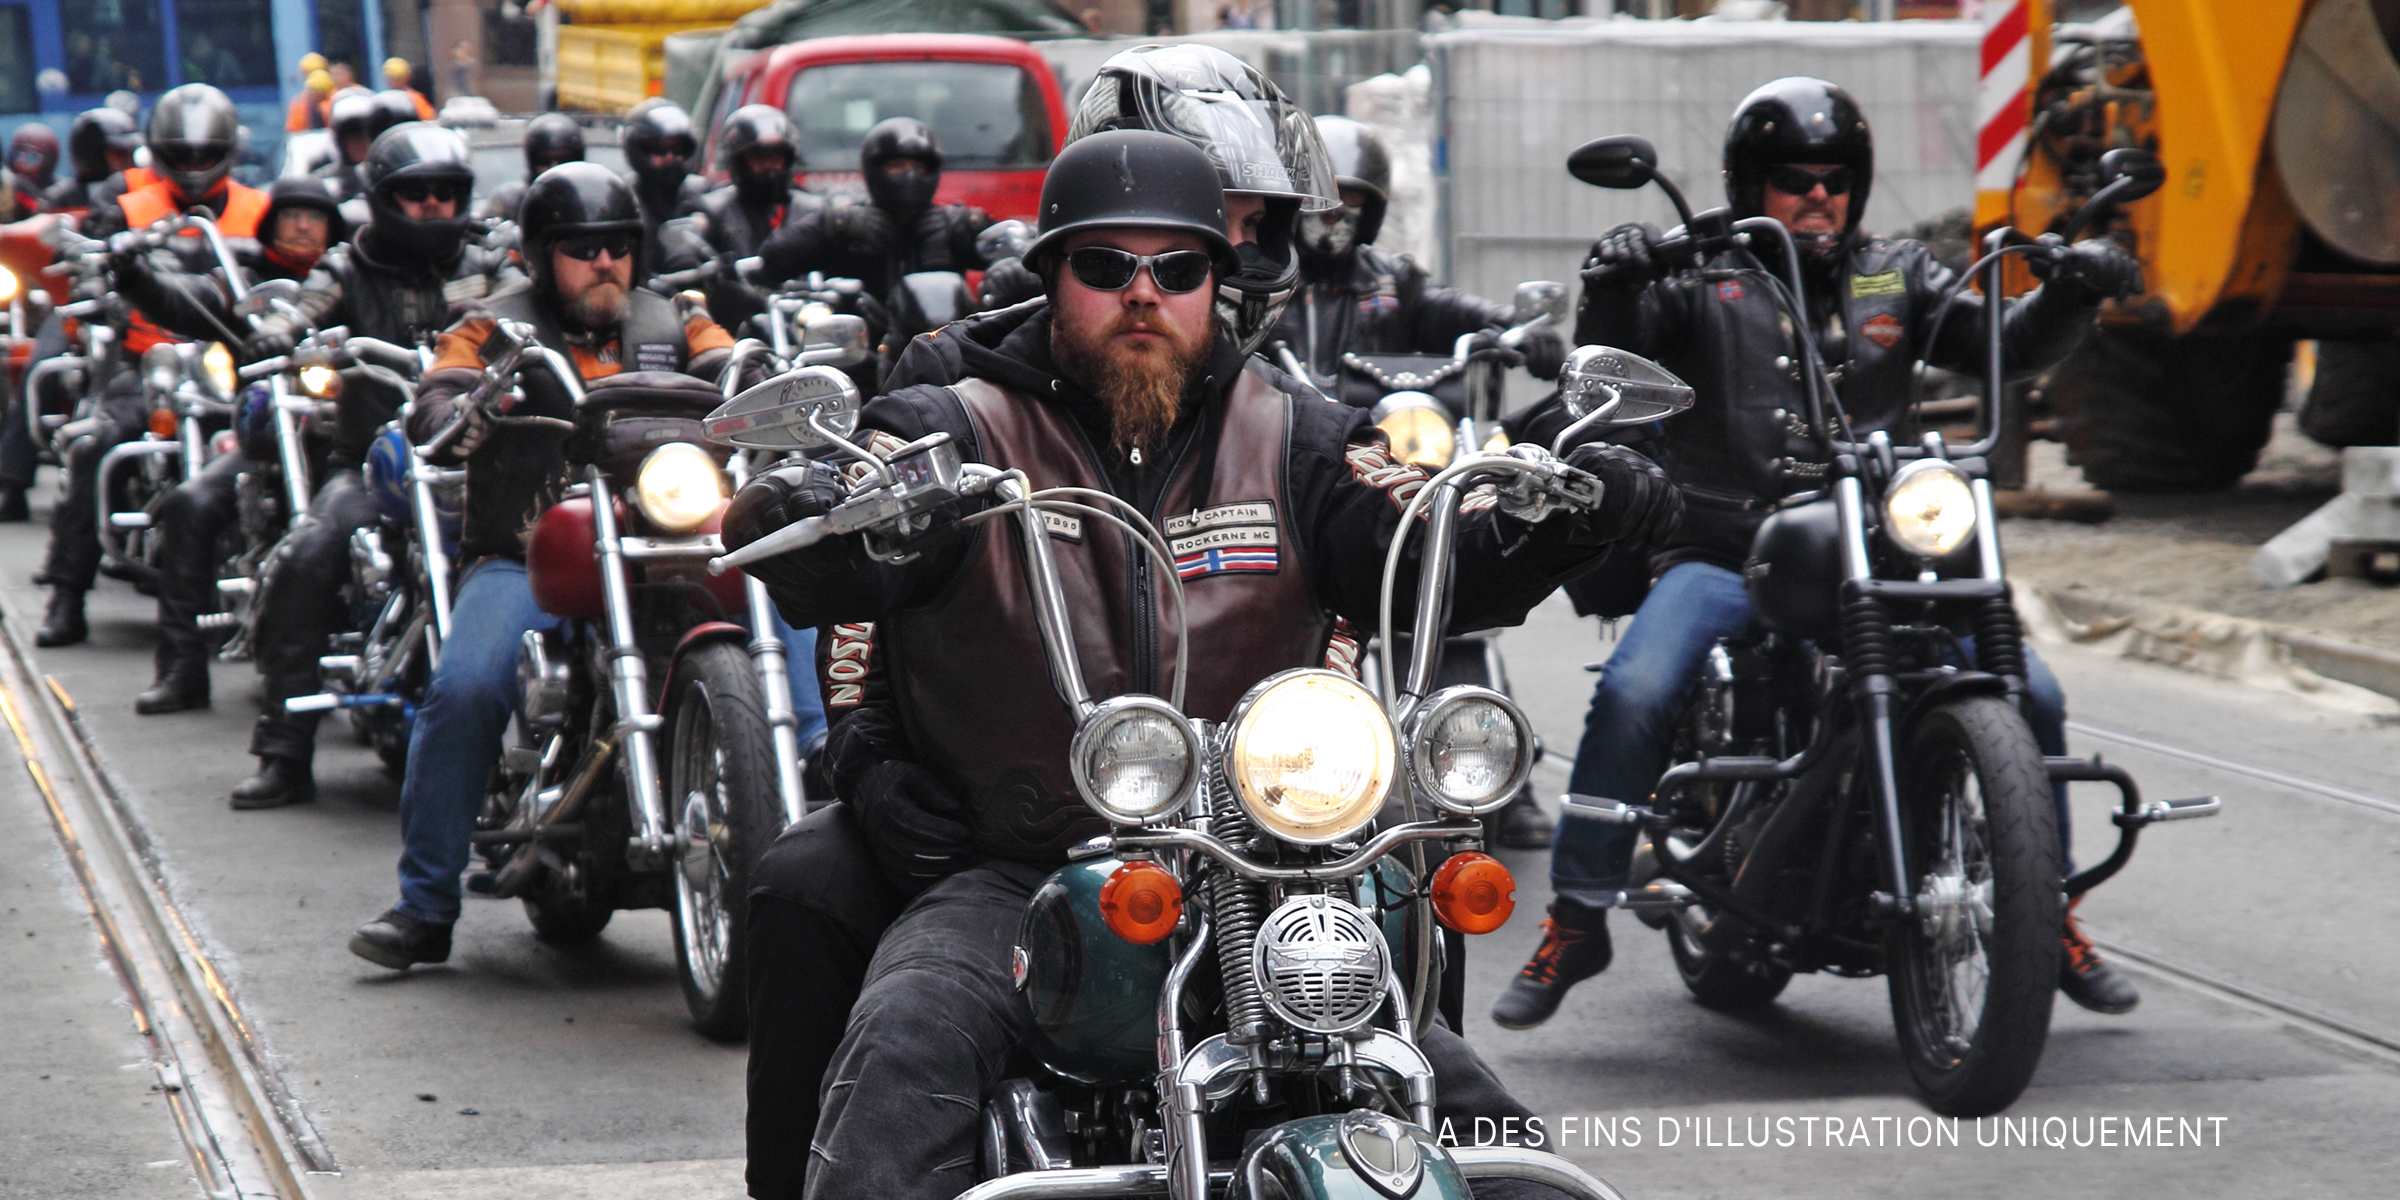 Un groupe d'hommes à moto sur la route. | Source : Shutterstock